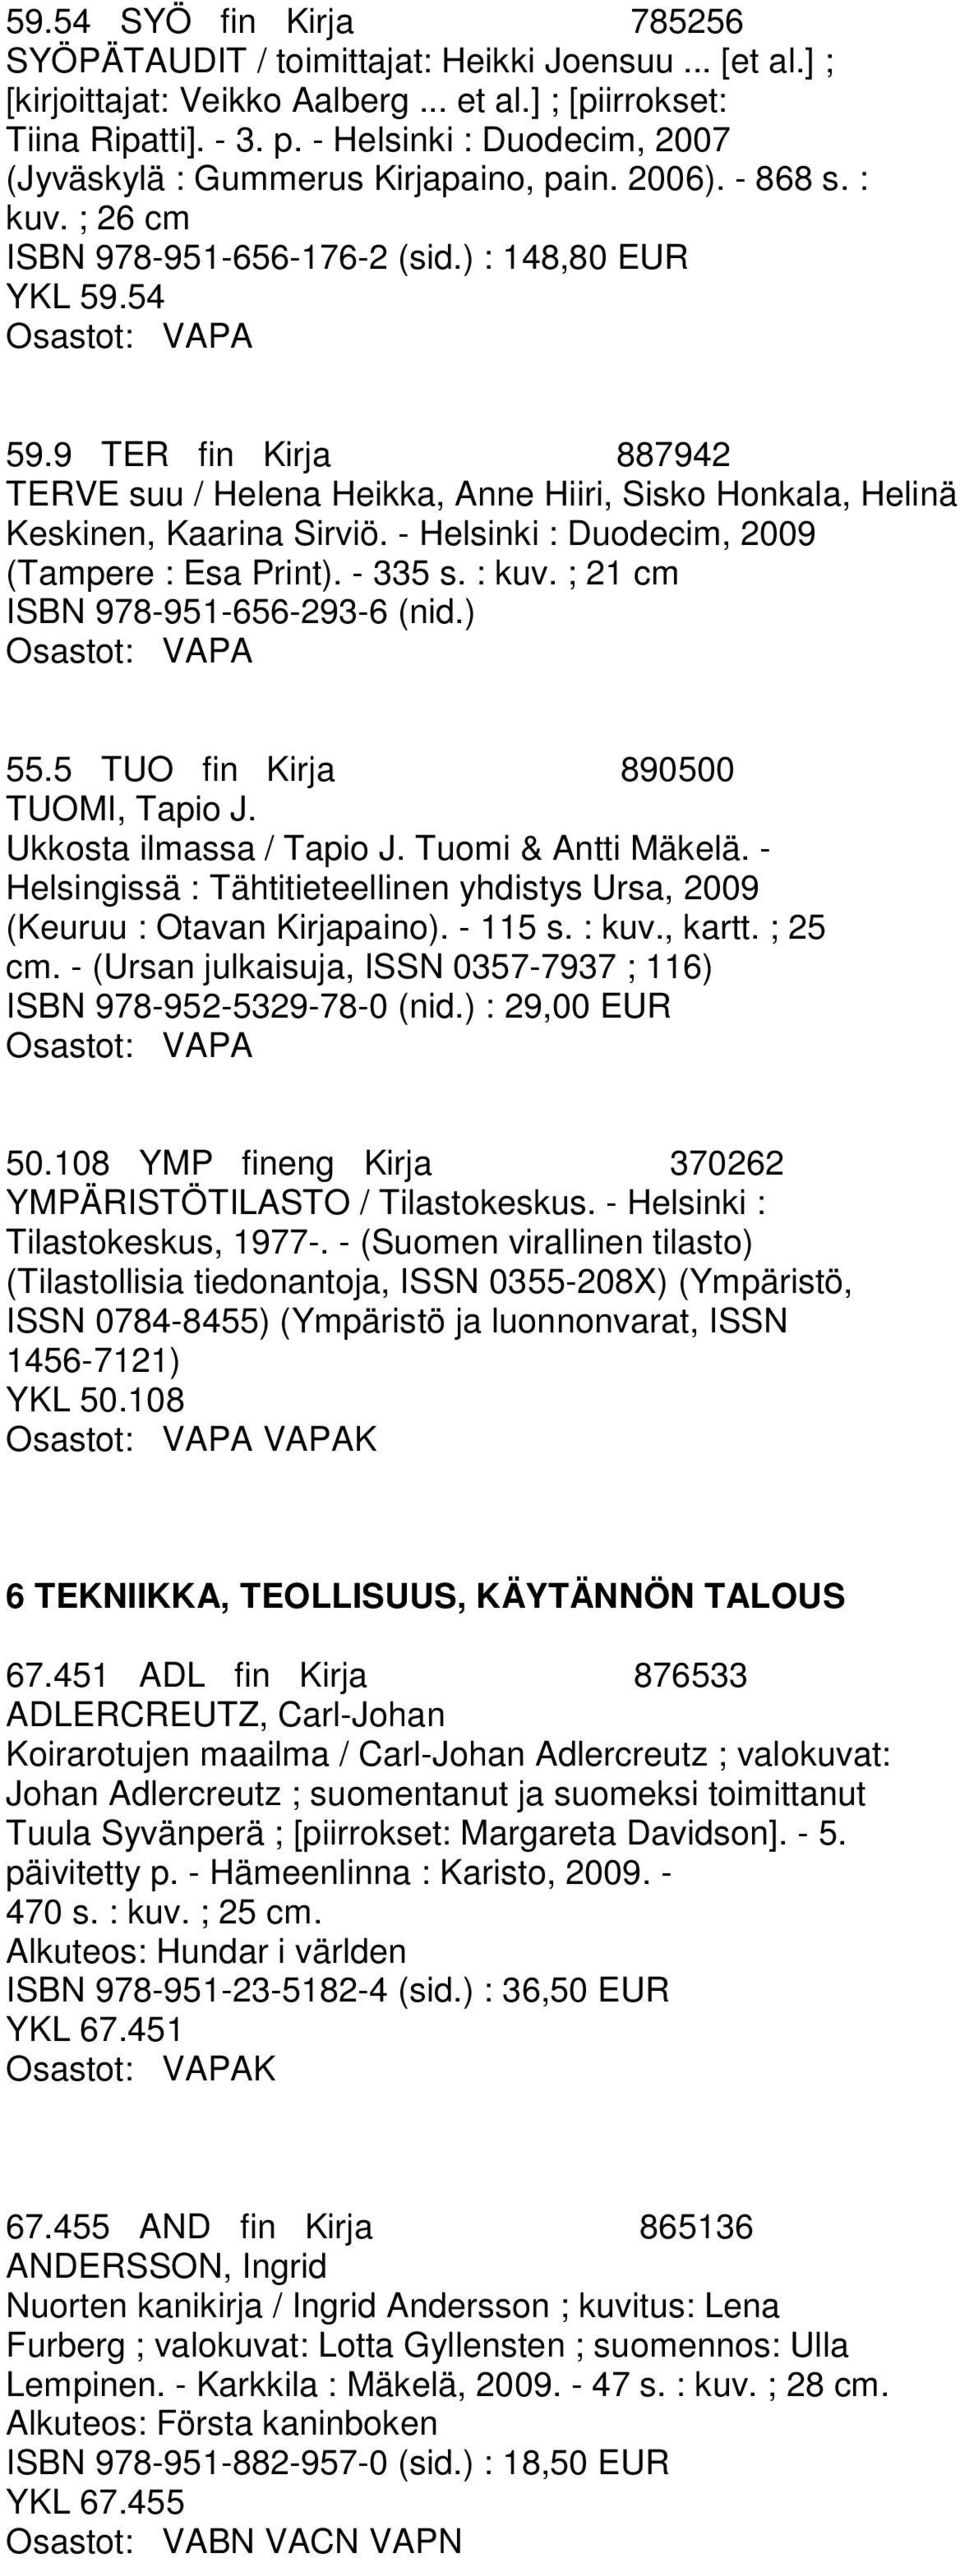 9 TER fin Kirja 887942 TERVE suu / Helena Heikka, Anne Hiiri, Sisko Honkala, Helinä Keskinen, Kaarina Sirviö. - Helsinki : Duodecim, 2009 (Tampere : Esa Print). - 335 s. : kuv.